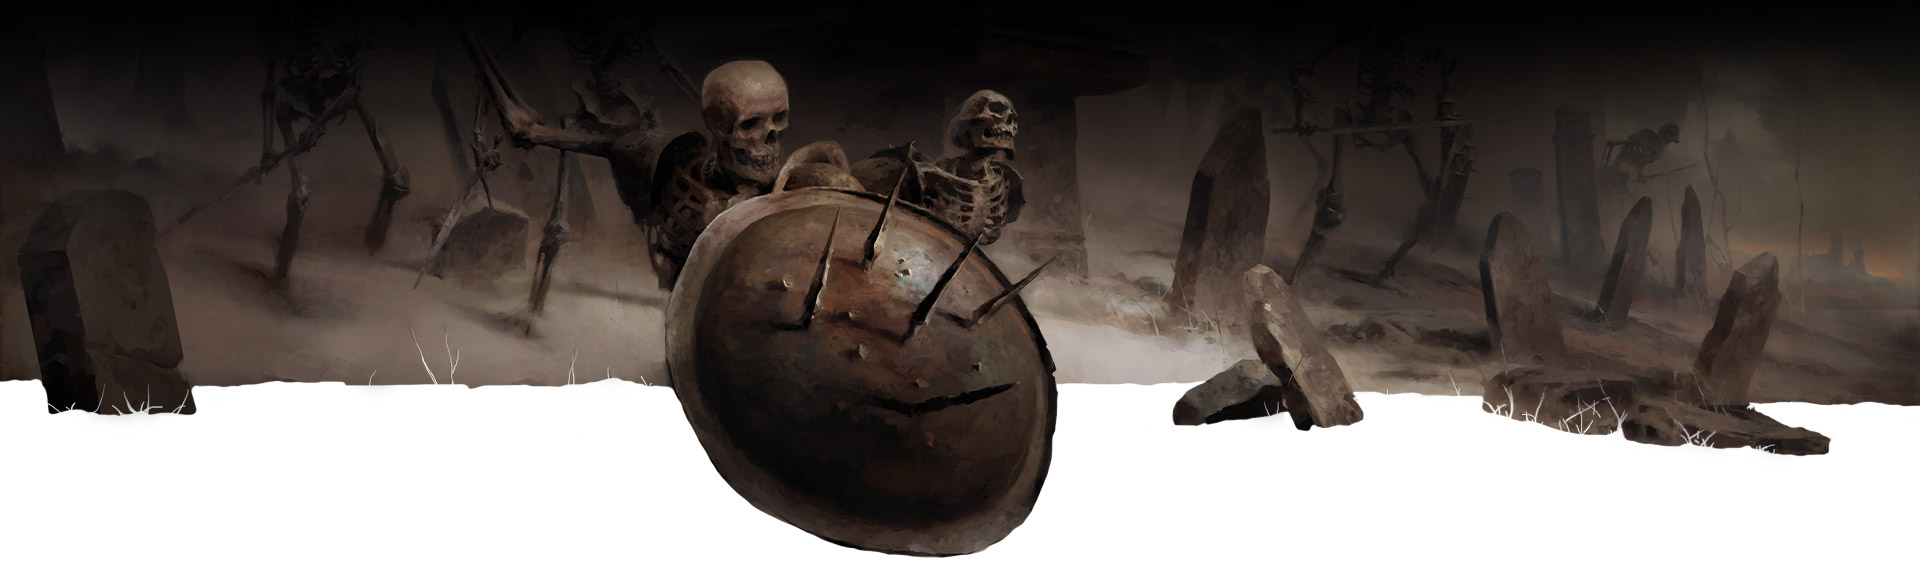 Esqueleto detrás de un escudo y lápidas